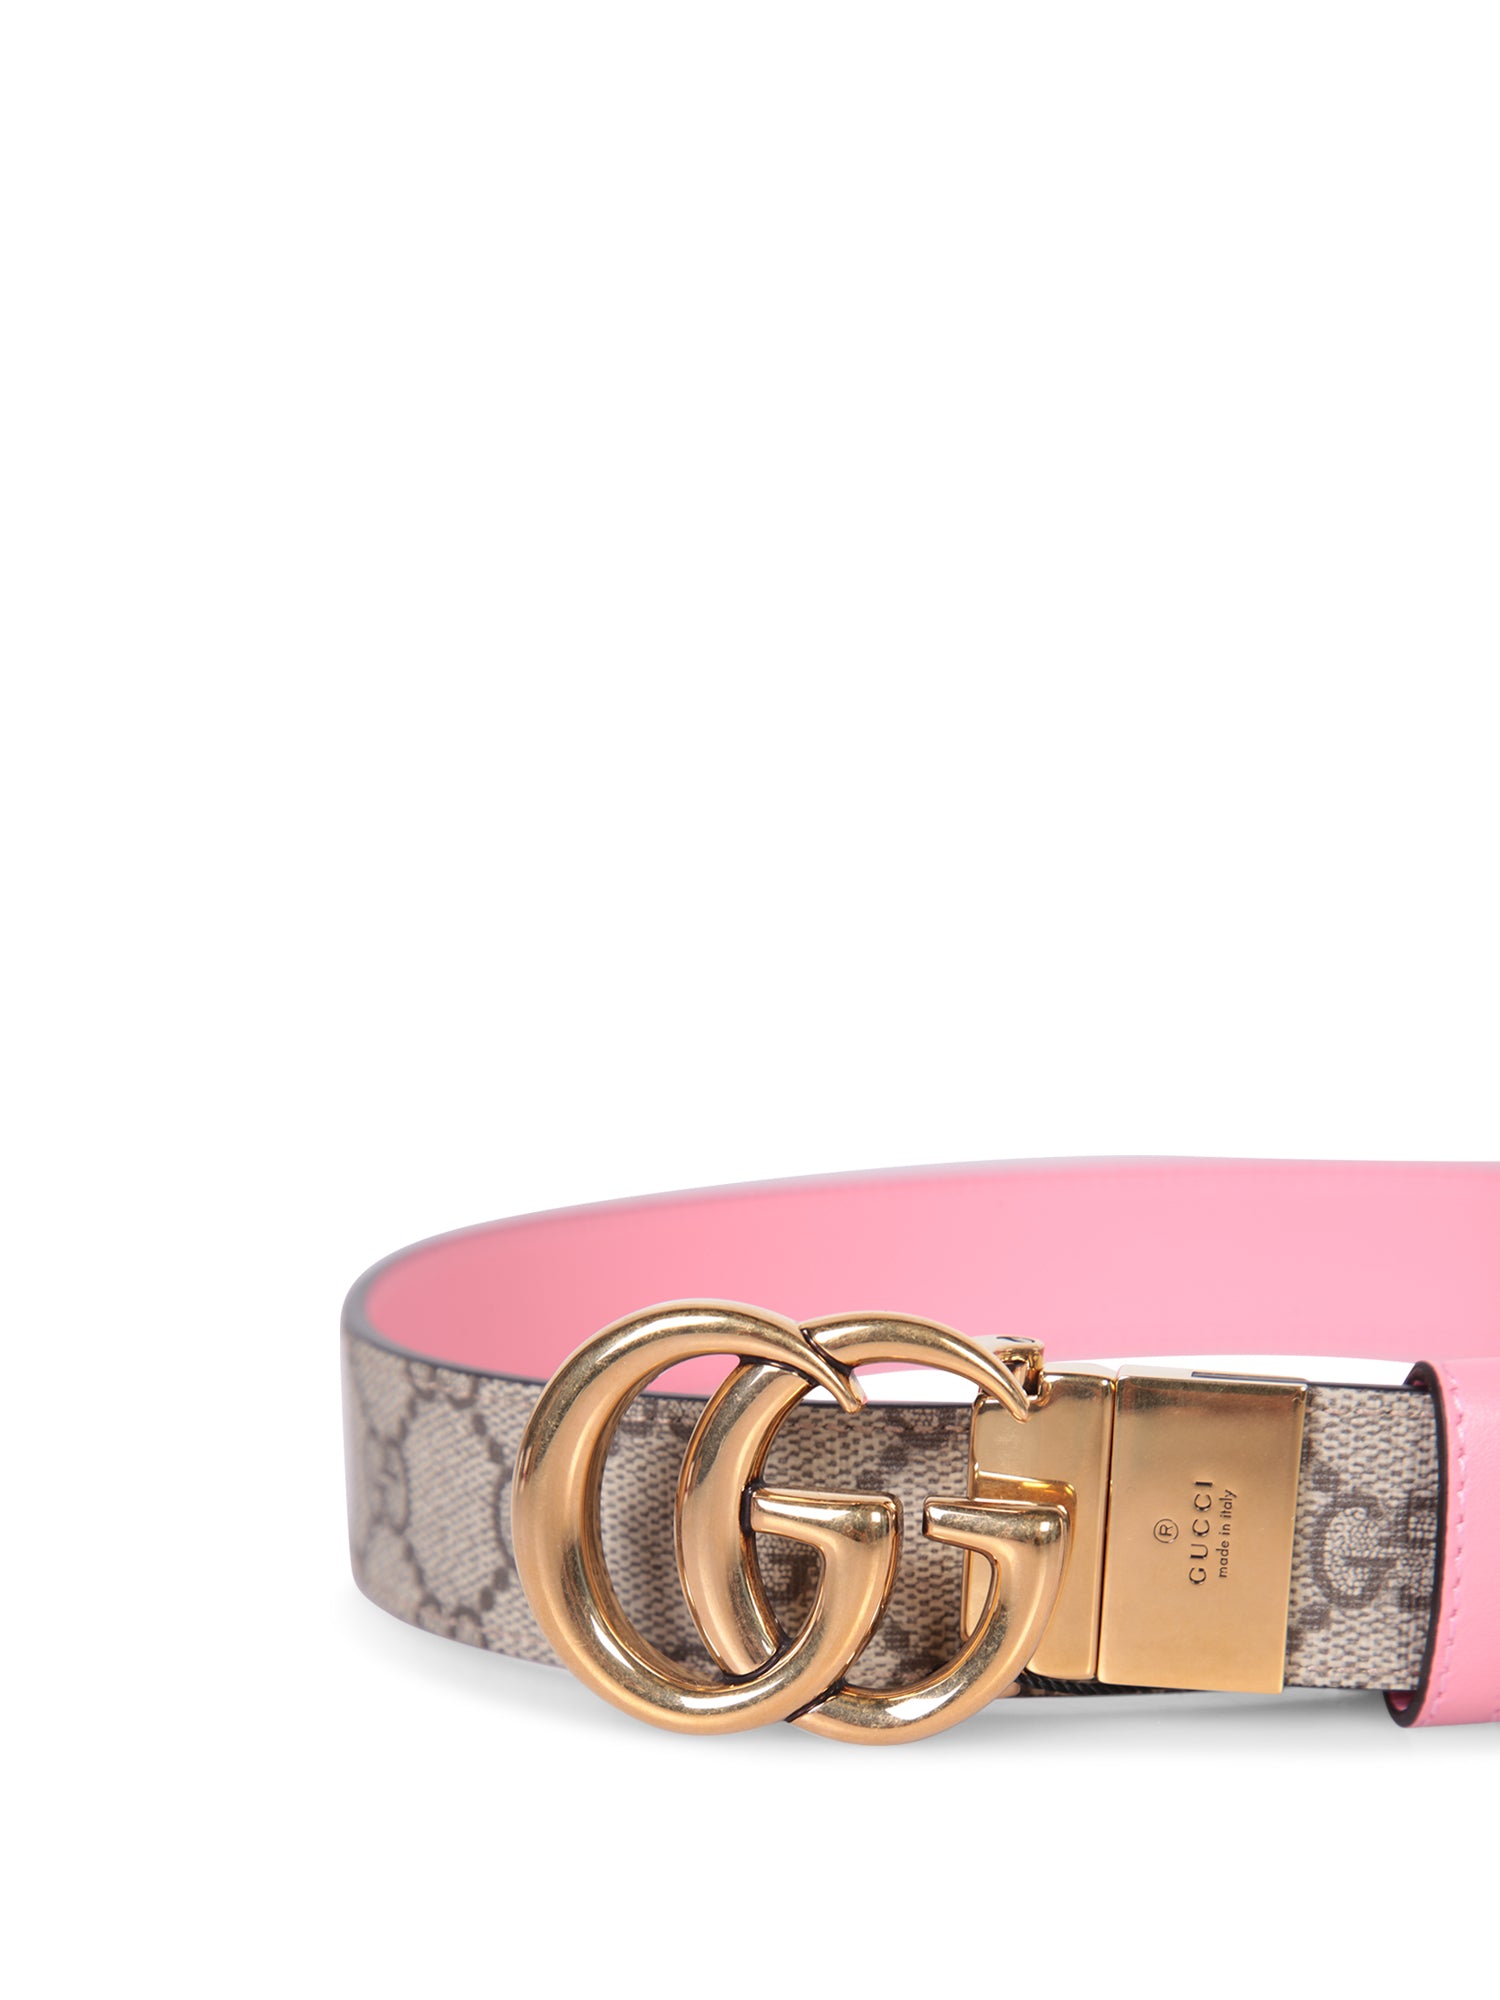 GUCCI GG Marmont belt pink/beige